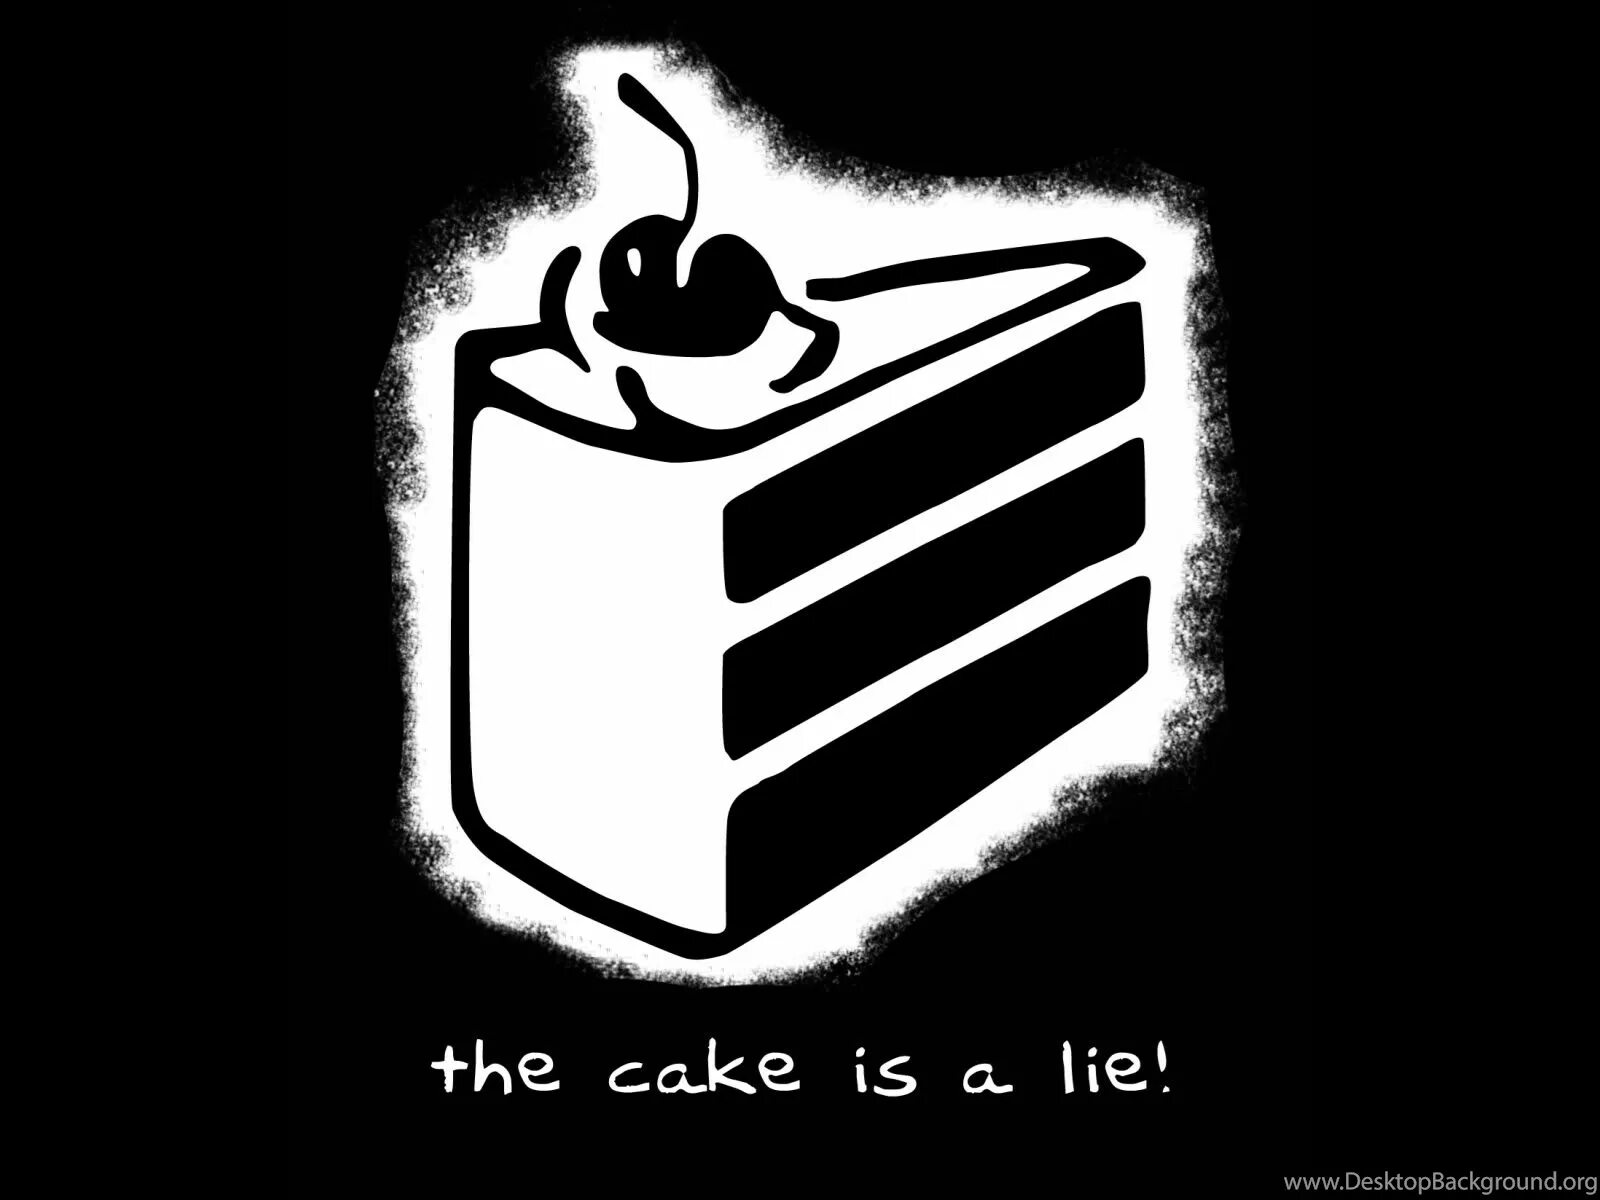 Life is a lie. Тортик это ложь. Cake is a Lie. Торт это ложь портал. Тортик ложь портал.